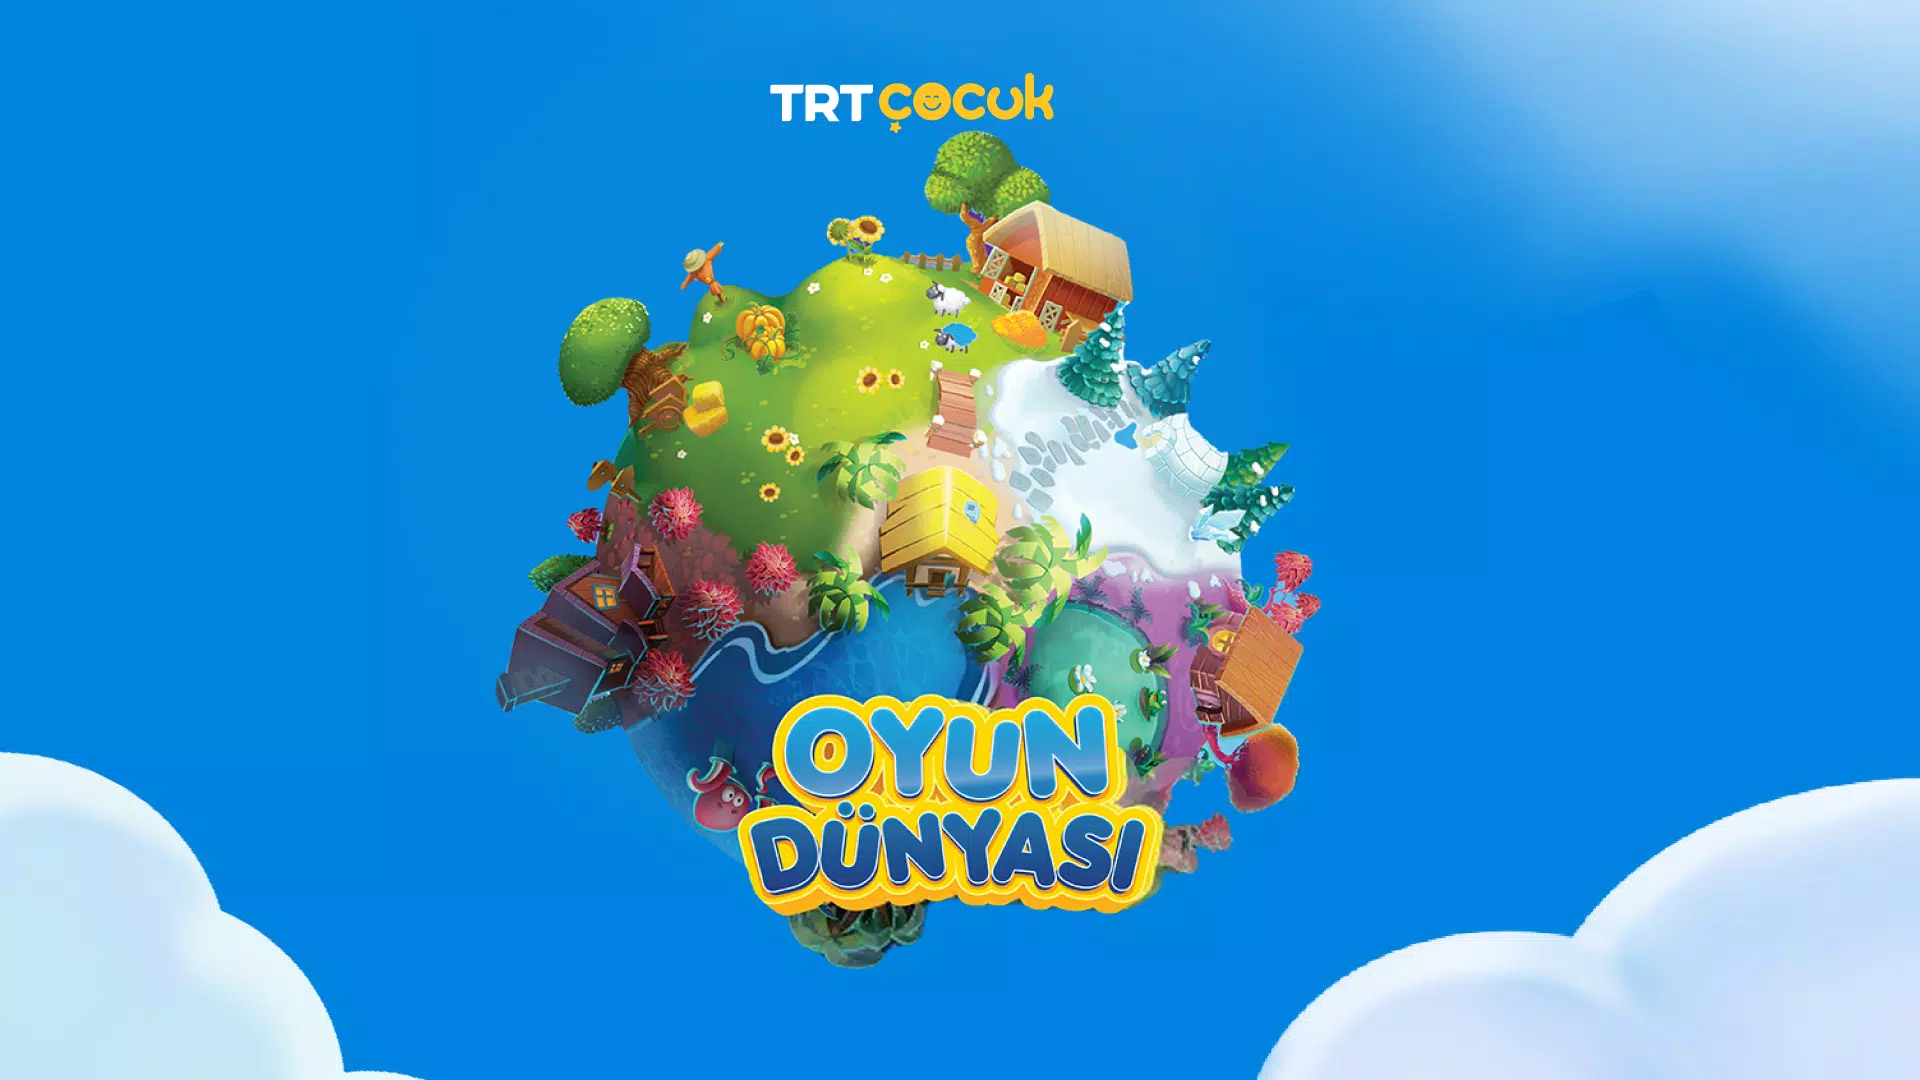 TRT Çocuk Oyun Dünyası APK for Android Download